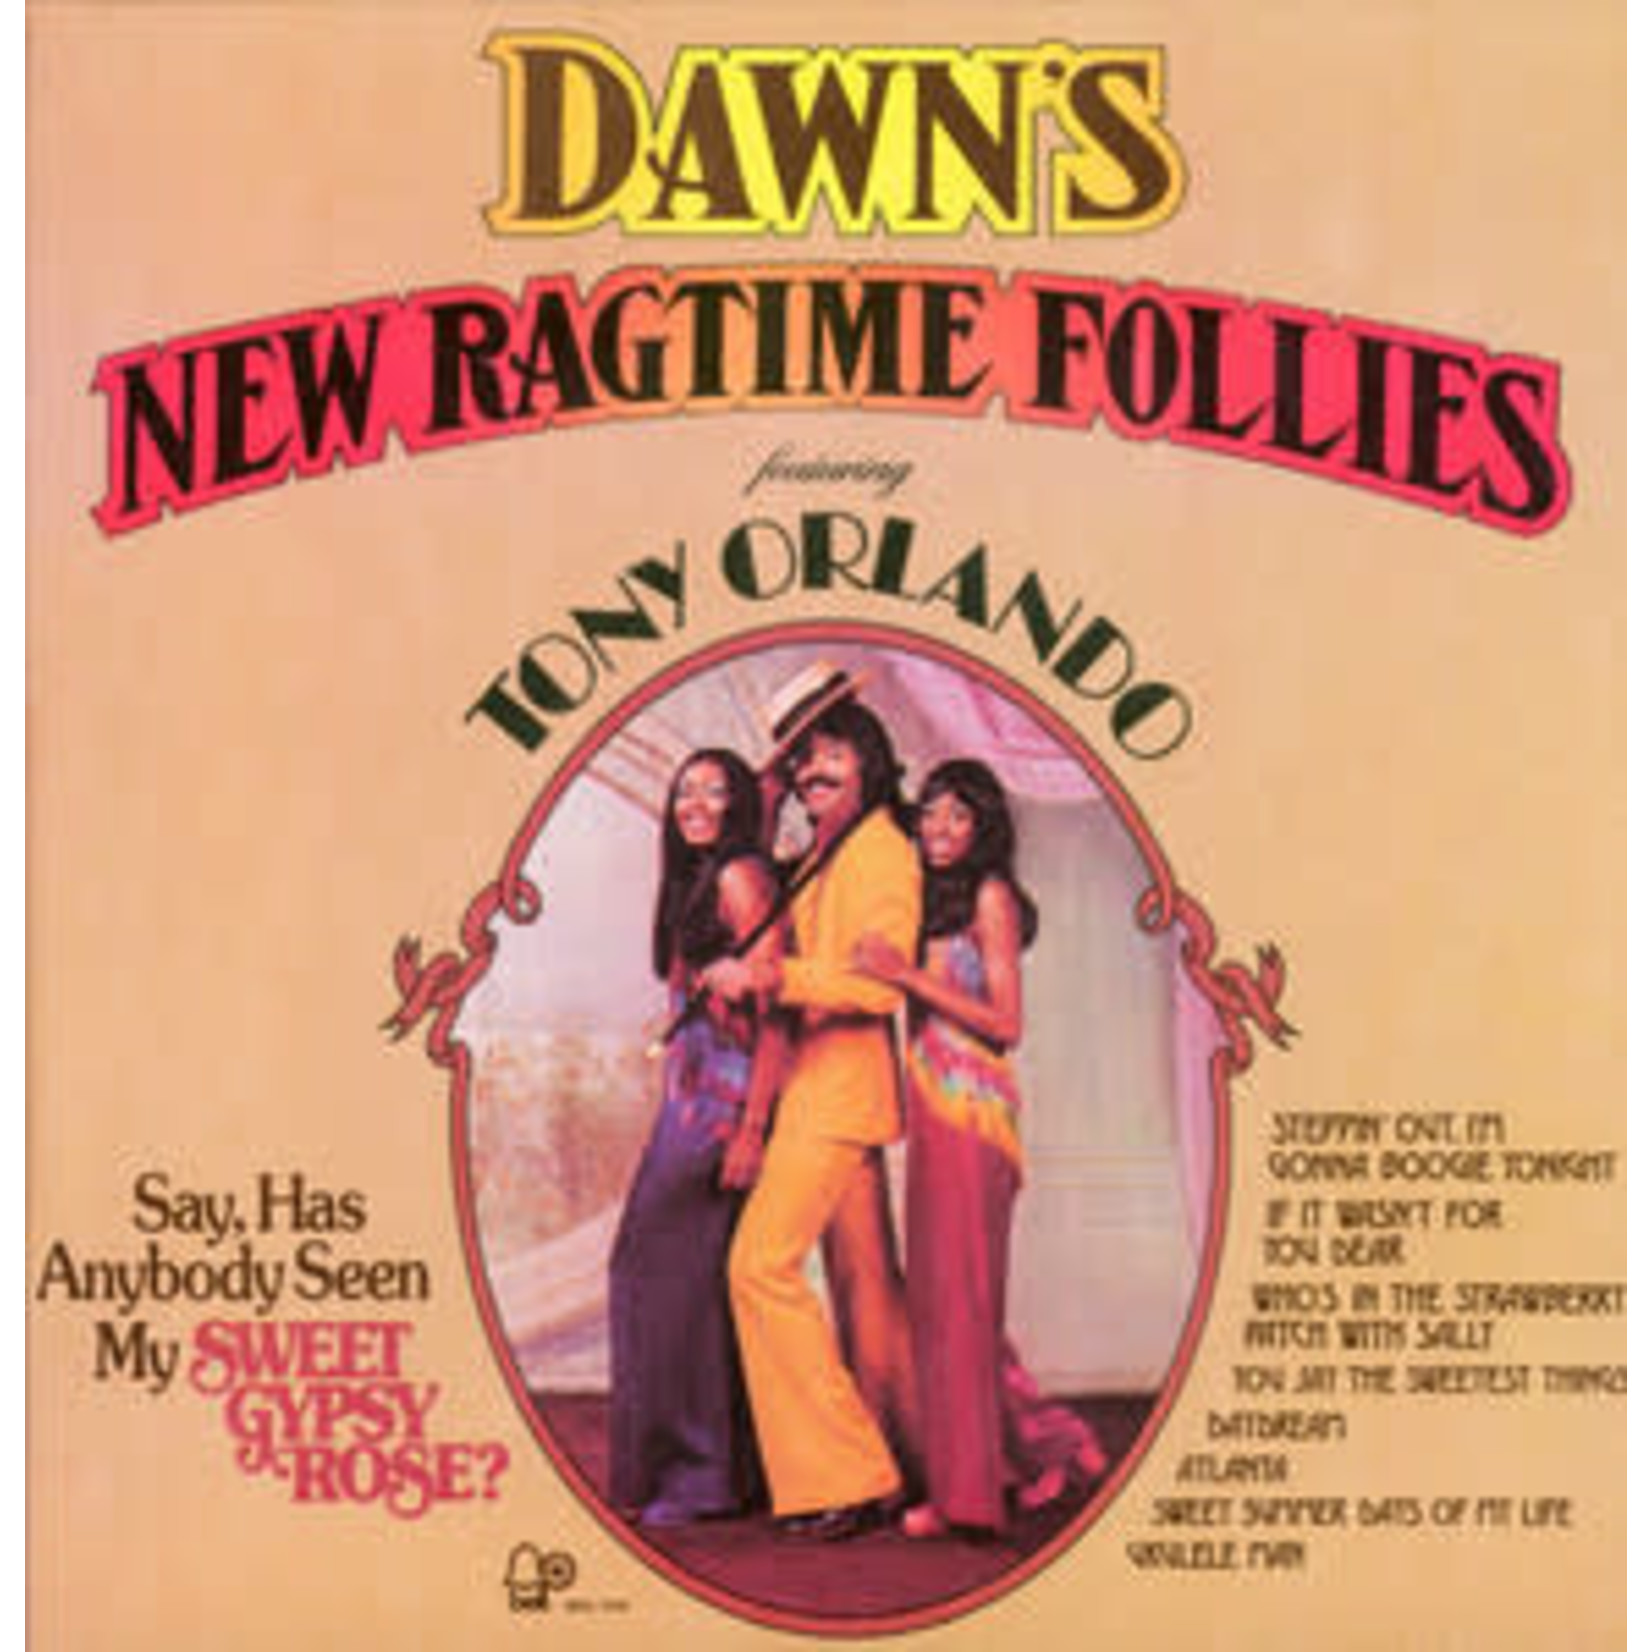 [Discontinued] Tony Orlando & Dawn - New Ragtime Follies